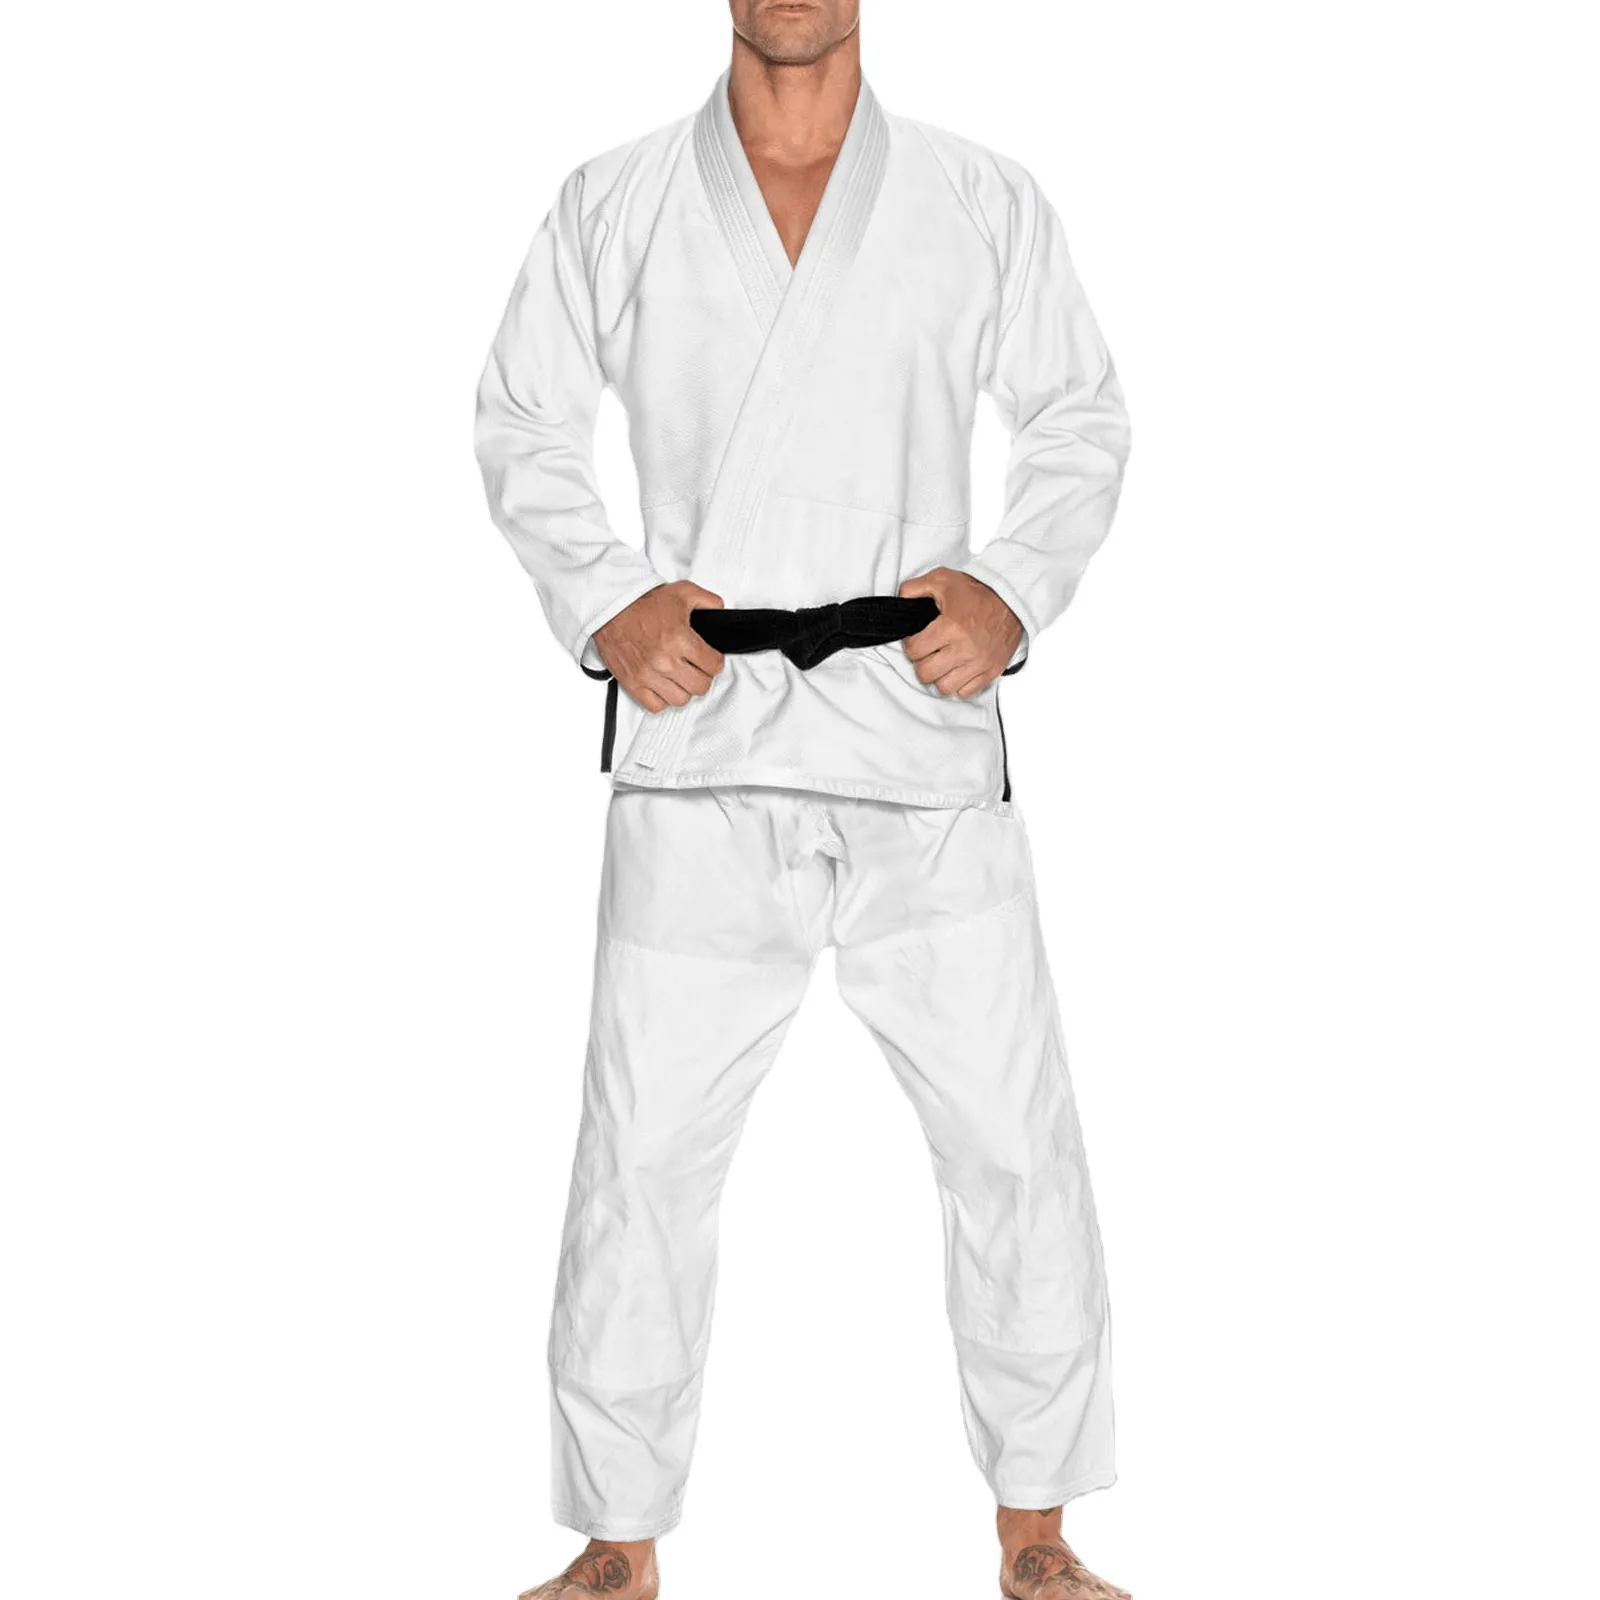 Униформа для джиу-джитсу унисекс униформа для джиу-джитсу, униформа для боевых искусств, Бразильская униформа для Джиу-джиу, оптовая продажа, низкая цена